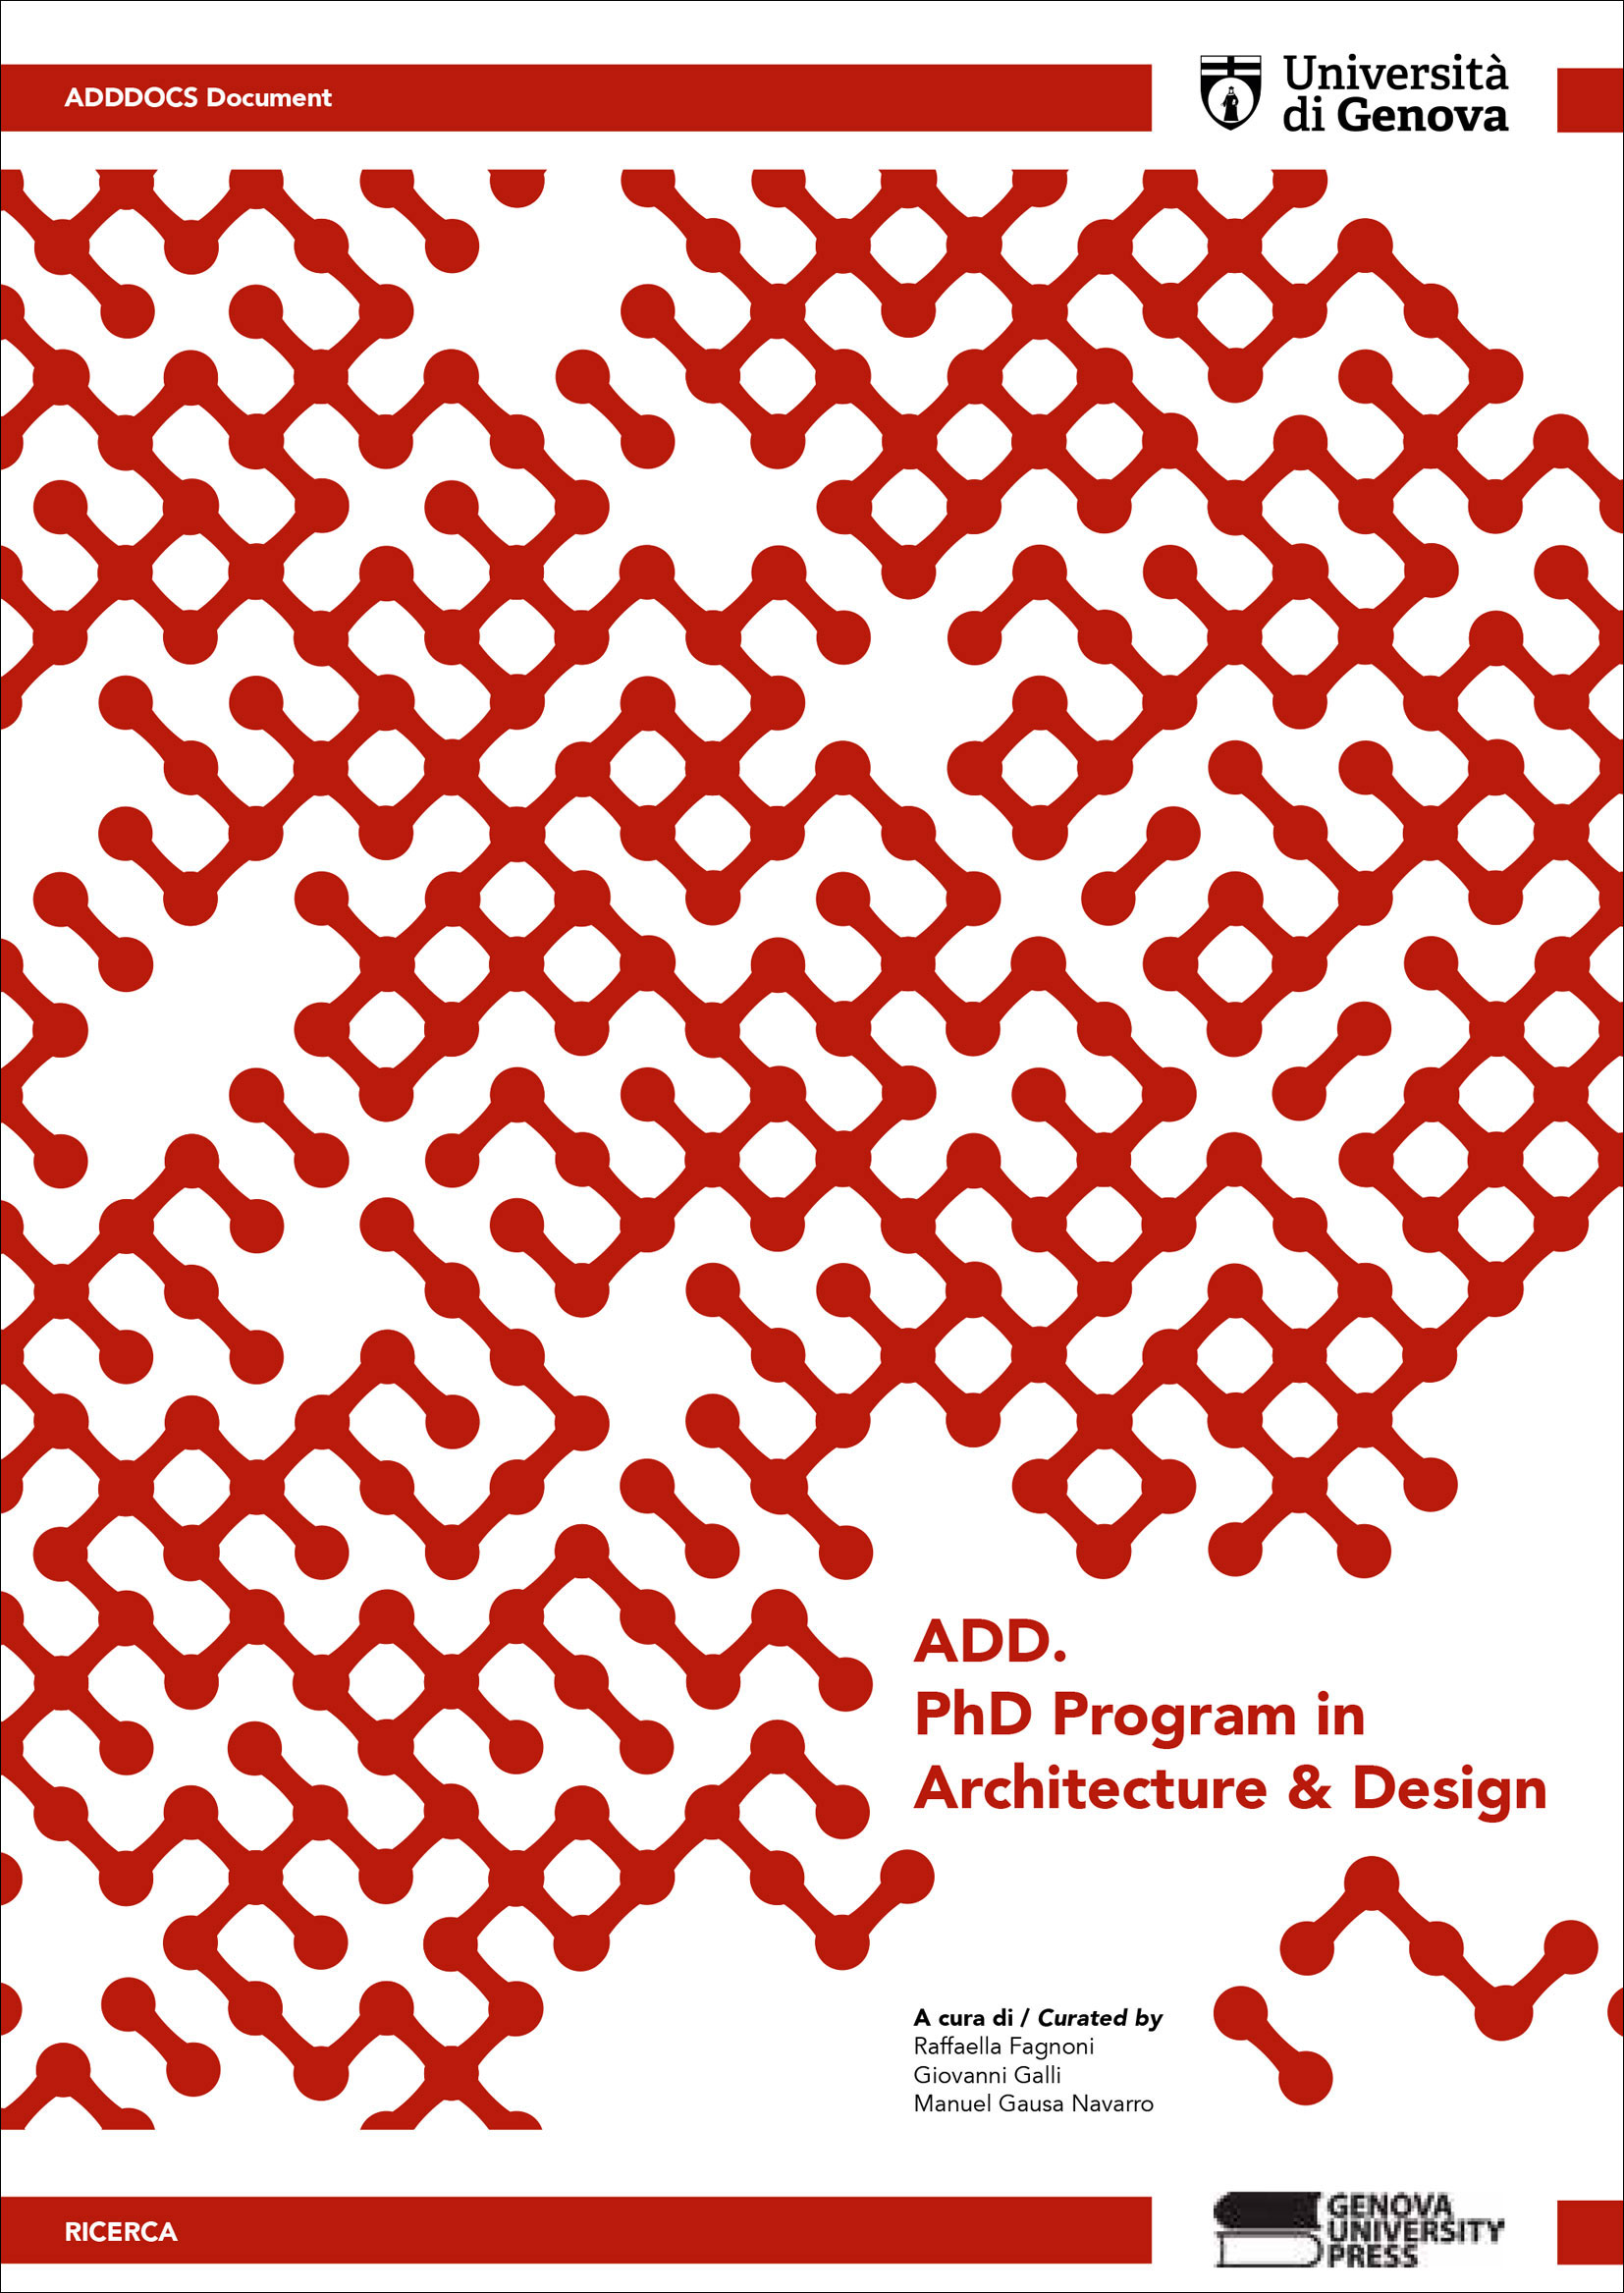 ADD. PhD Program in Architecture & Design